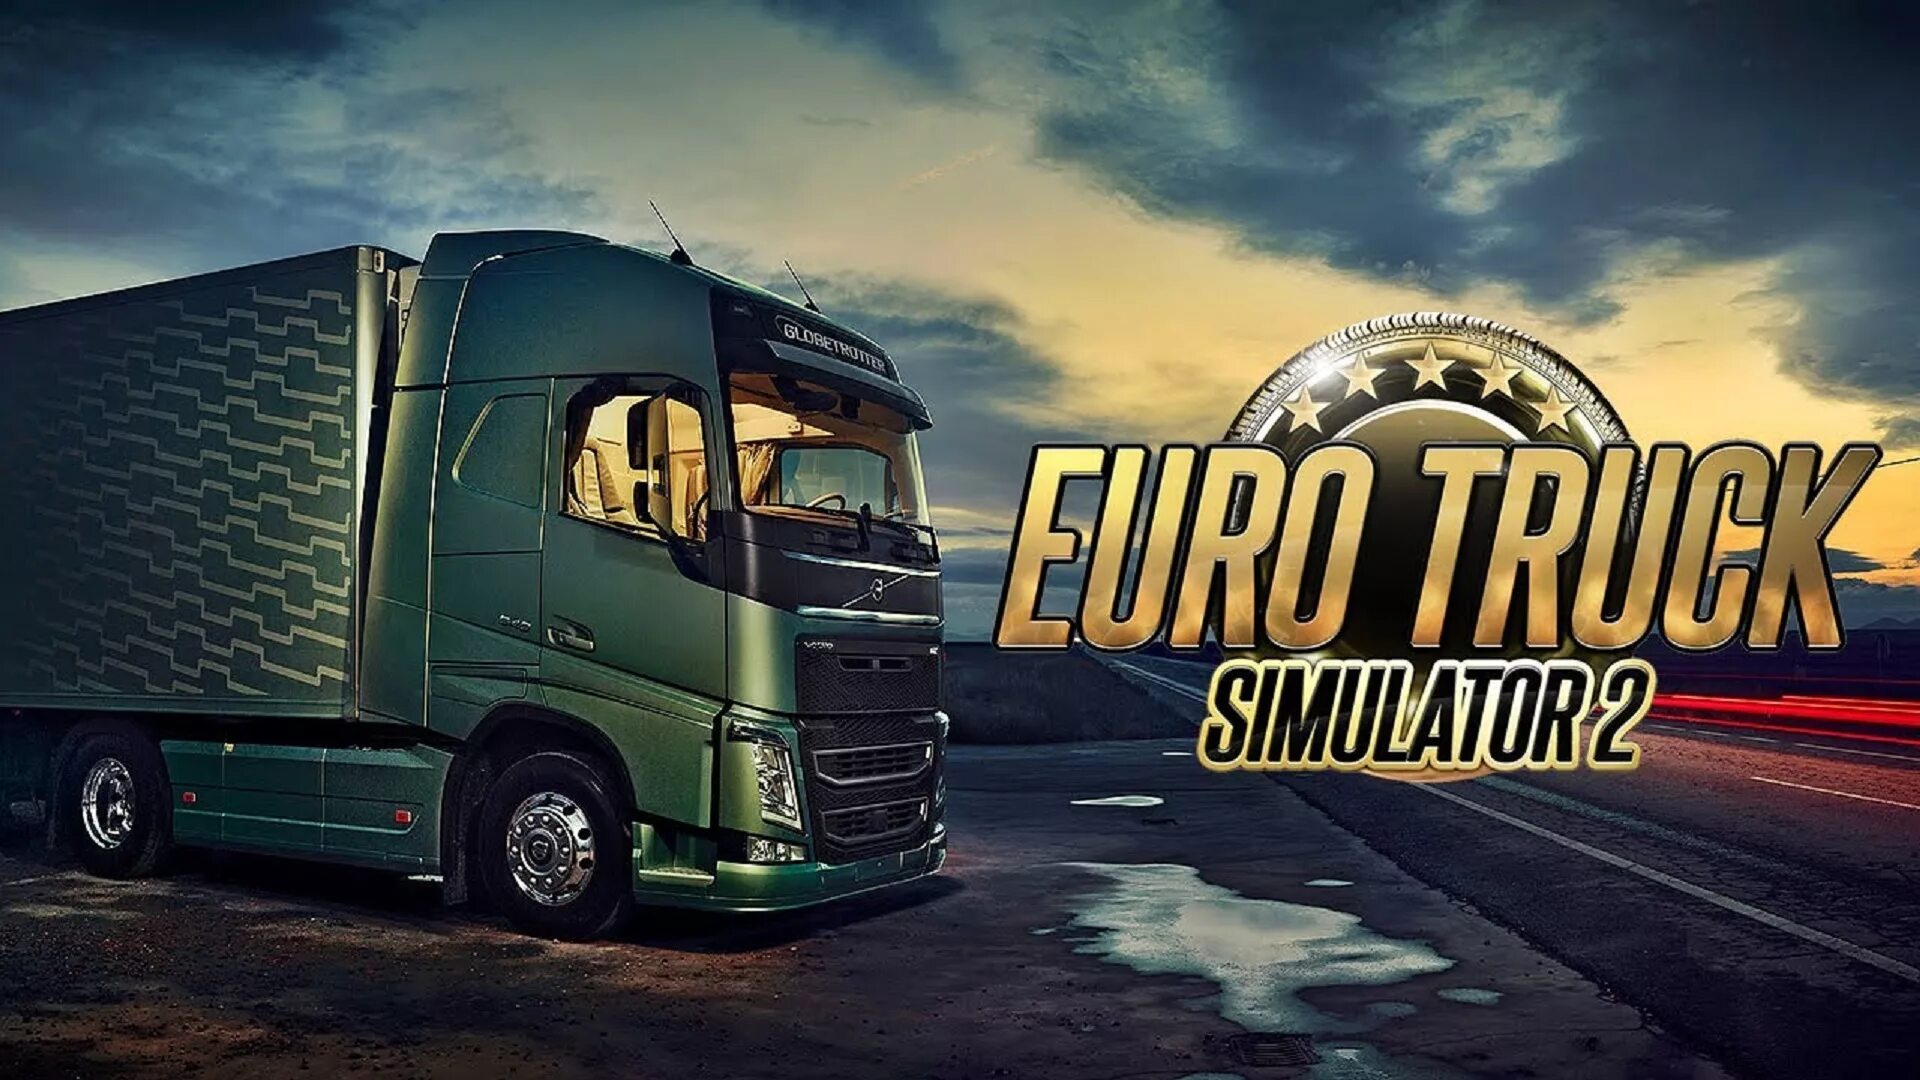 Eurotrucks2. Евро трак симулятор 2. Симулятор дальнобойщика Euro Truck Simulator 2. Евро трак симулятор 2 дальнобойщики. Euro Truck Simulator 2 обложка.